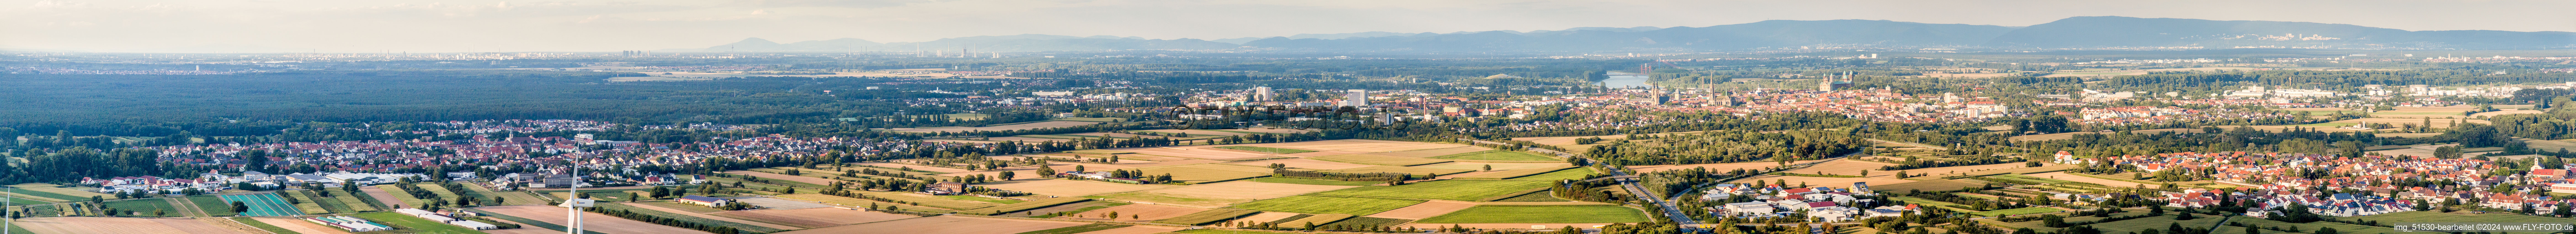 Vue aérienne de Panorama de l'ensemble de l'agglomération avec périphérie à Speyer dans le département Rhénanie-Palatinat, Allemagne